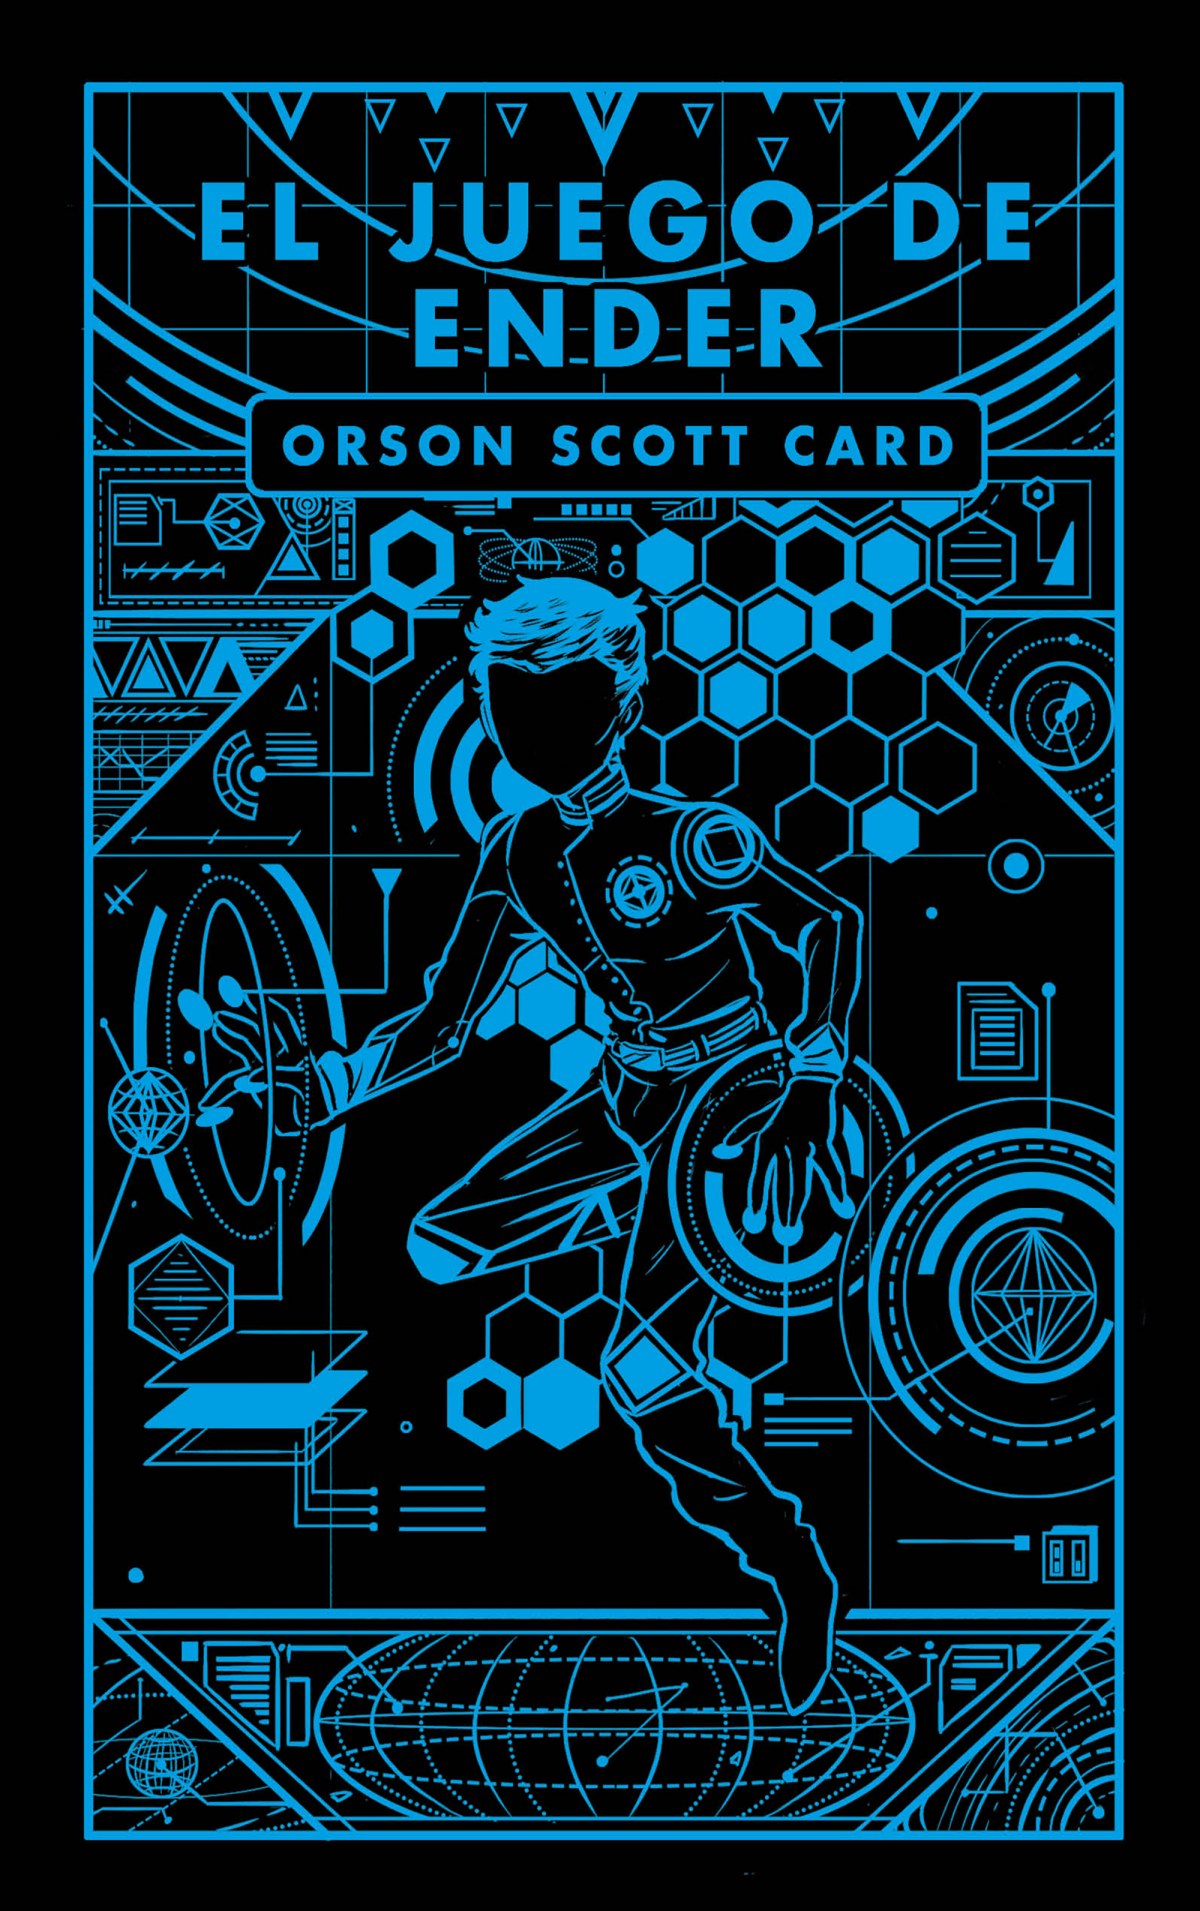 El juego de ender - Card, Orson Scott